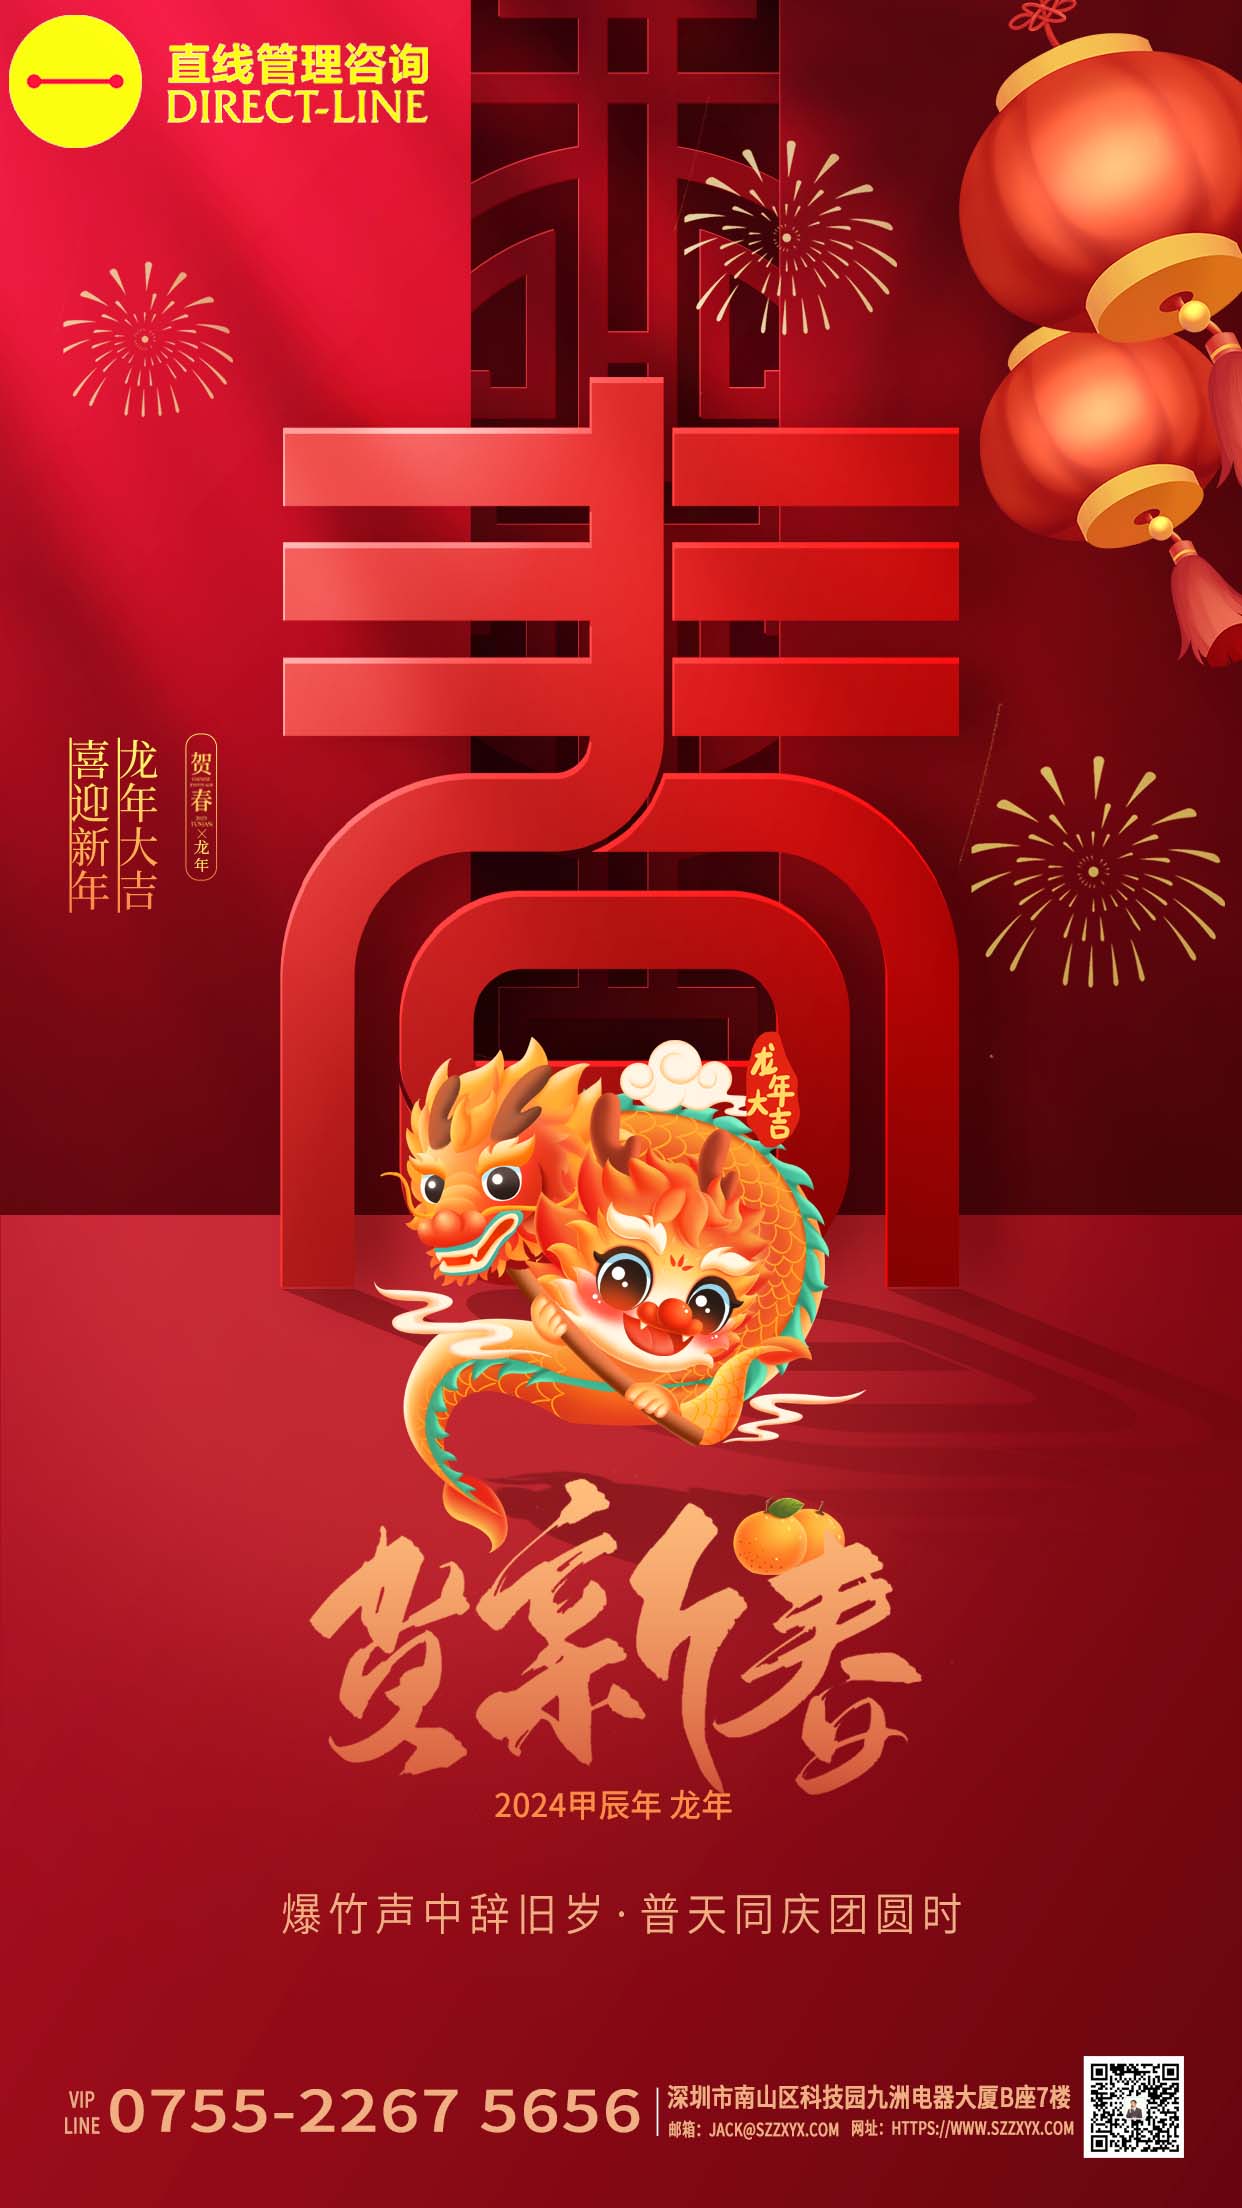 深圳直线管理咨询恭祝大家“喜迎新年,龙年大吉”!